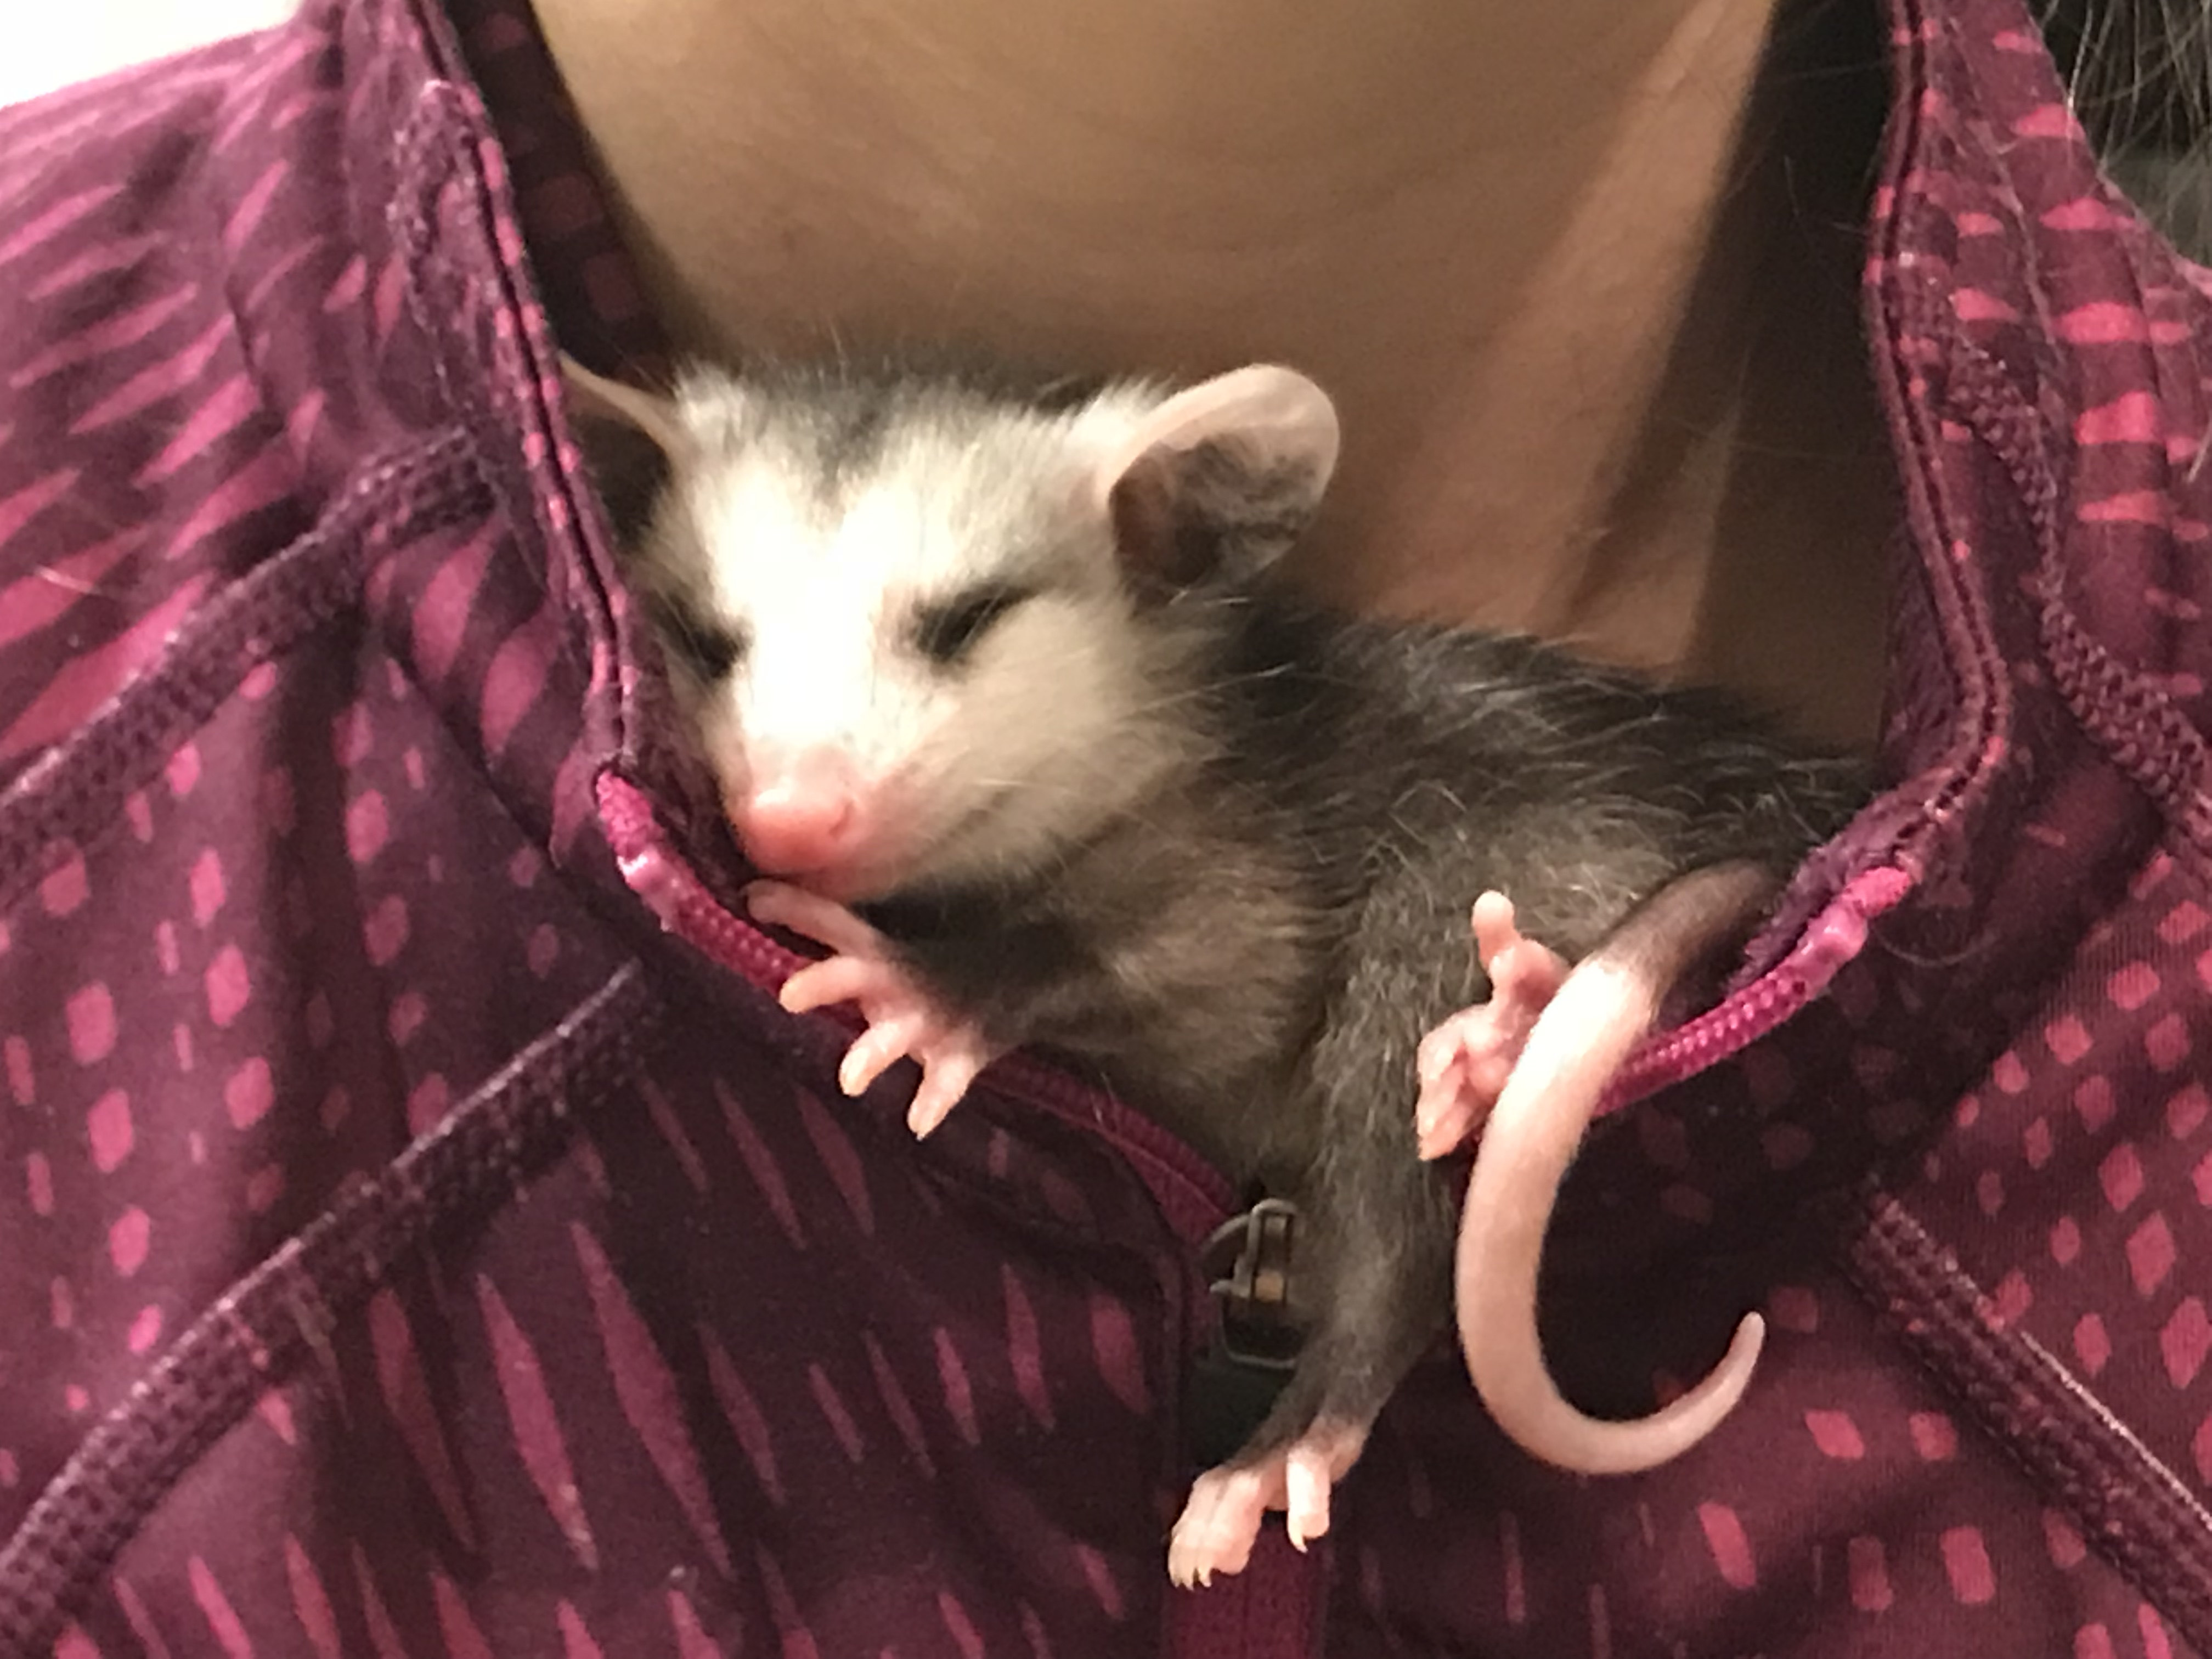 pet baby opossum or possum